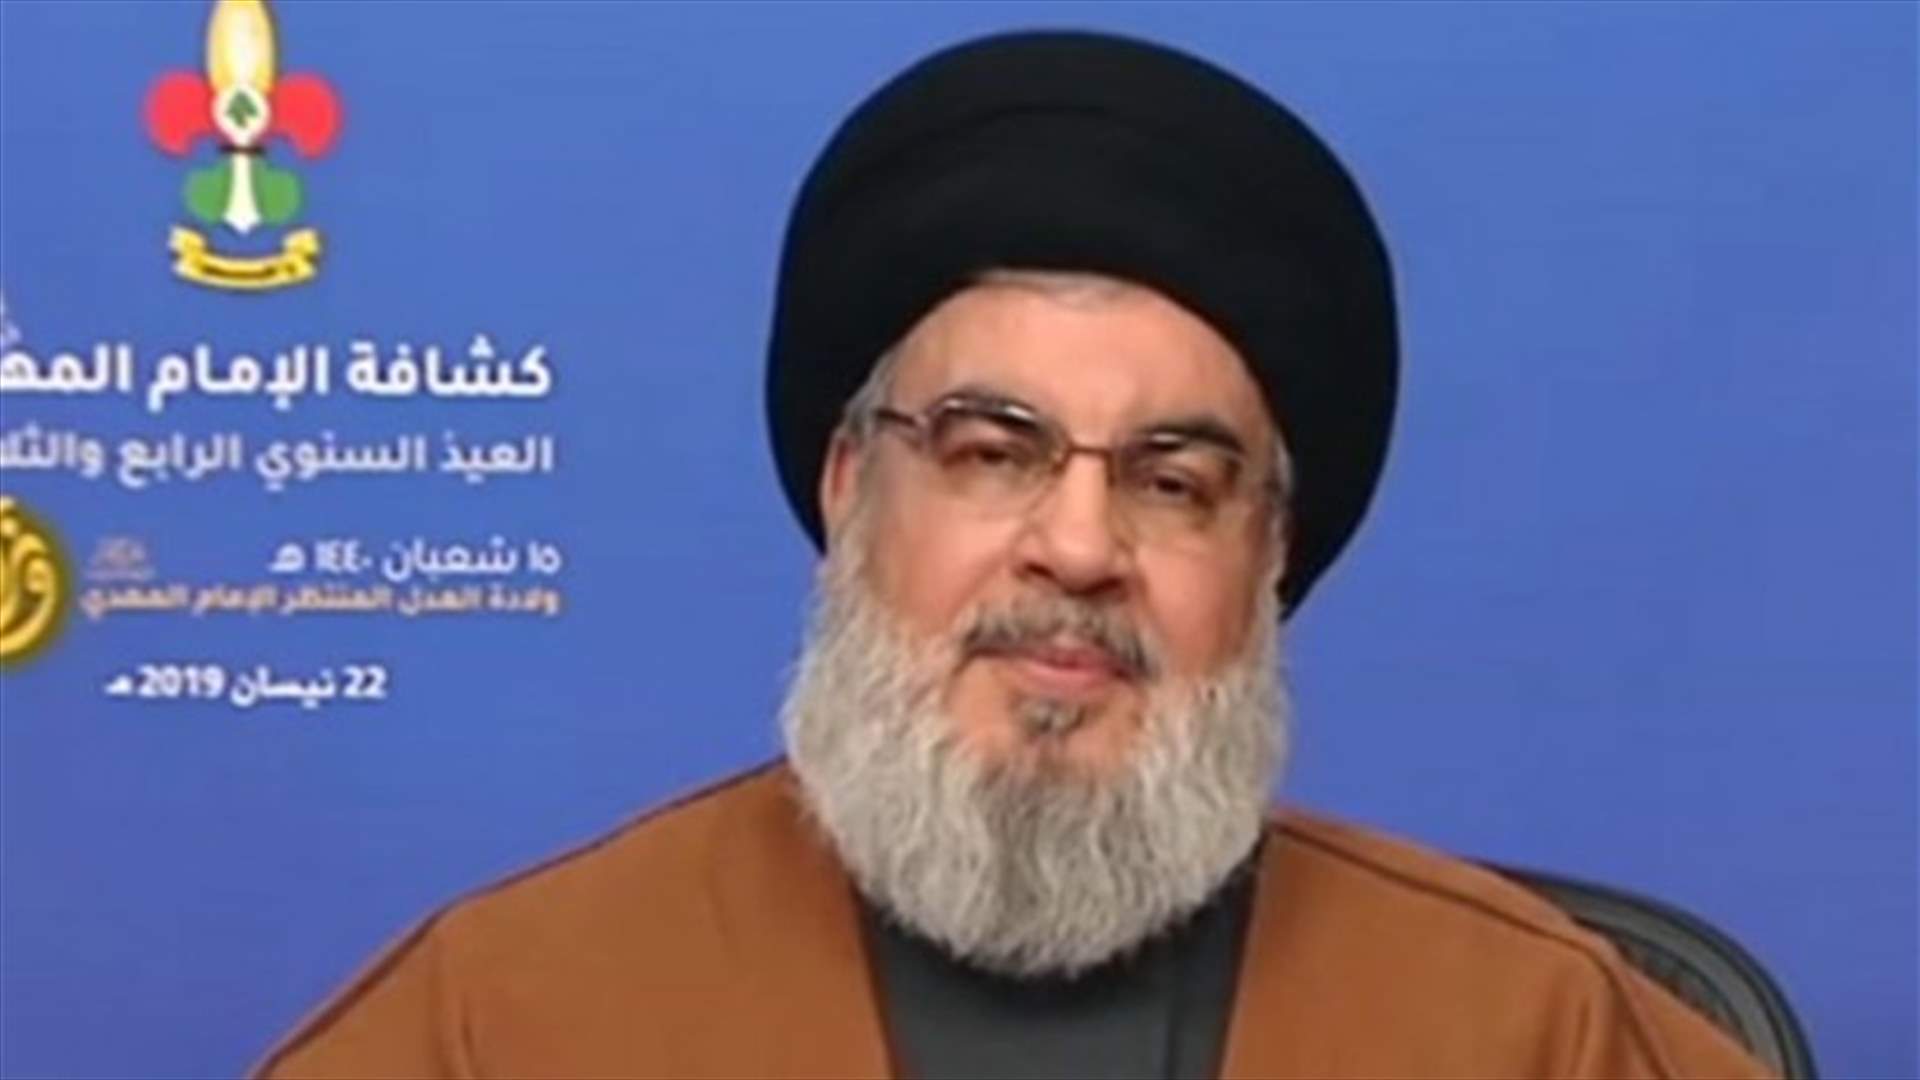 نصرالله: حزب الله يرفض المس بالفئات الفقيرة... ولم أقل إنّ هناك حربًا اسرائيلية على لبنان